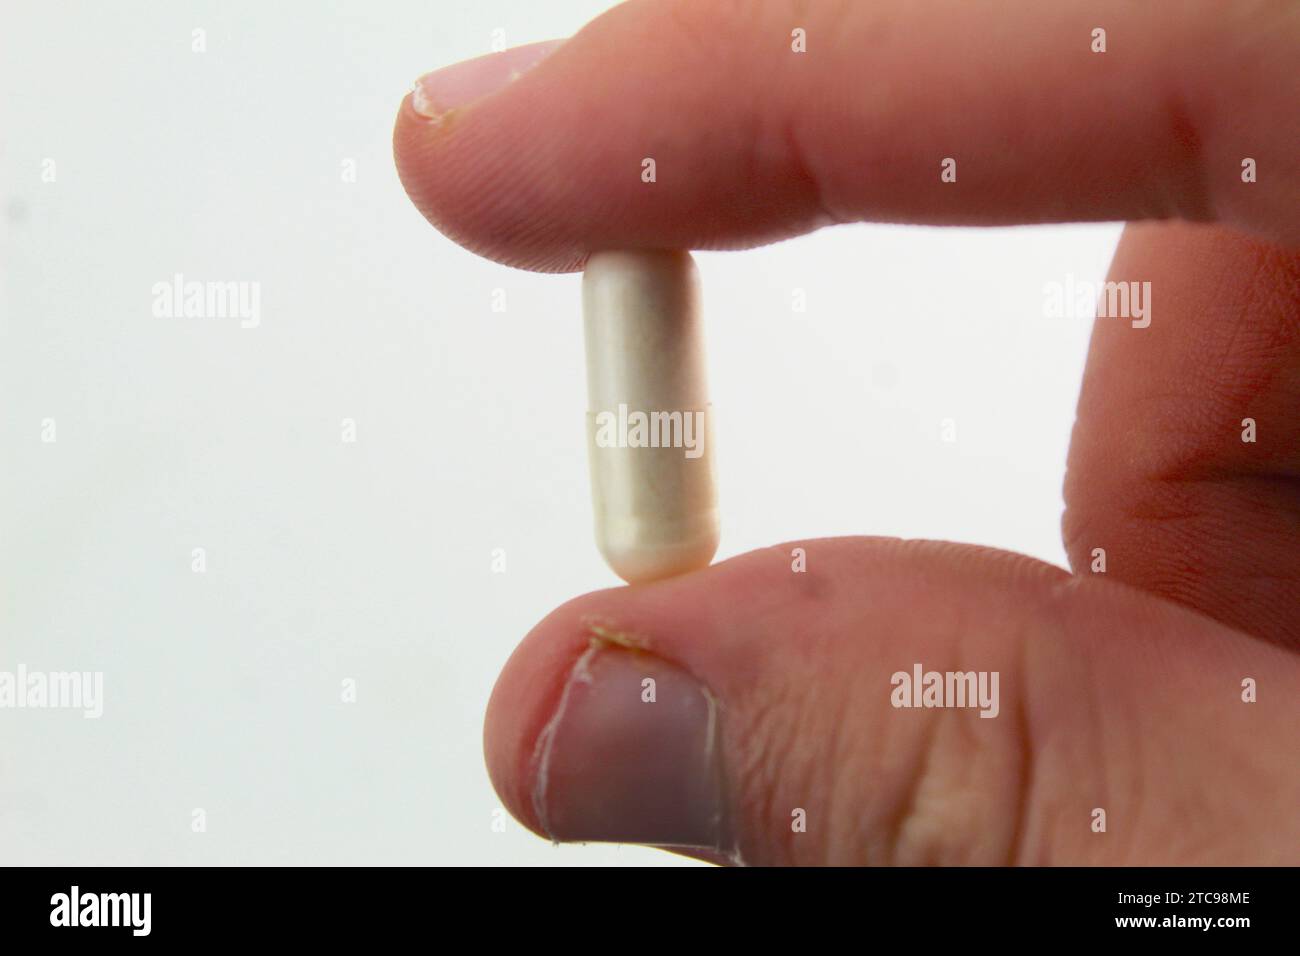 Une photo en gros plan d'une personne tenant une pilule blanche entre ses deux doigts. Banque D'Images